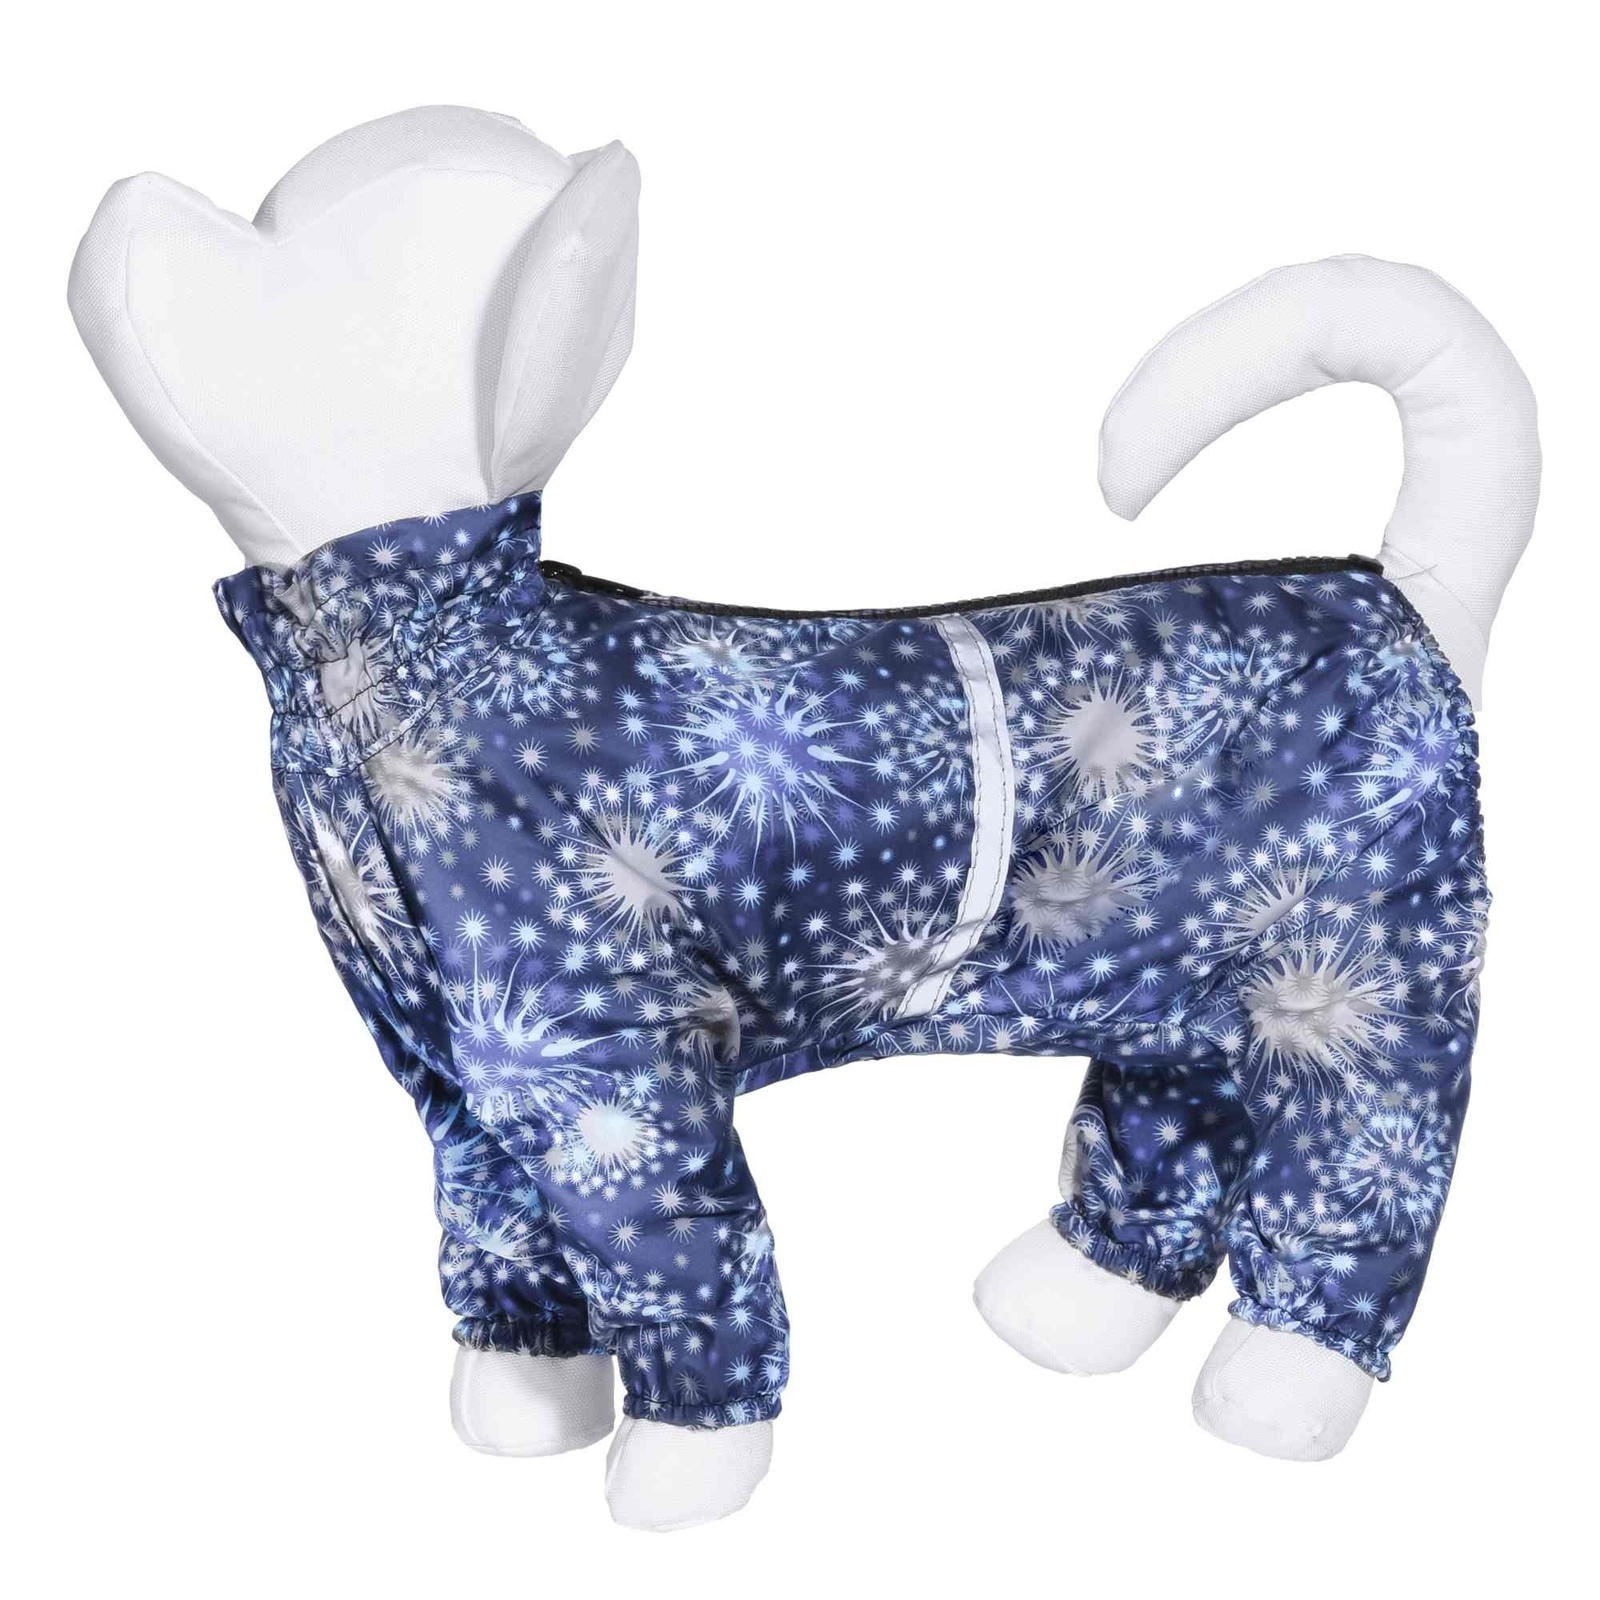 Yami-Yami одежда Yami-Yami одежда дождевик для собак с рисунком Огни синий для малых пород (№4) yami yami одежда yami yami одежда дождевик для собак с рисунком огни синий джек рассел терьер 4